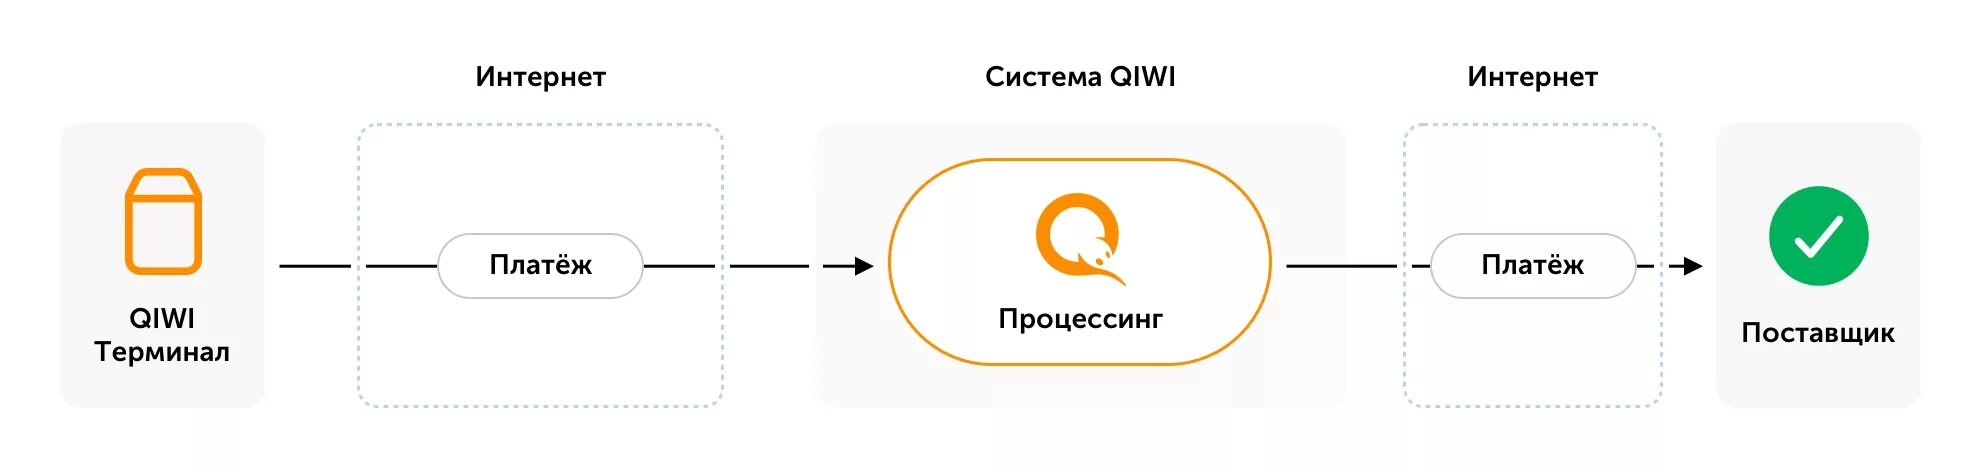 Киви банкротство. Структура QIWI. Схема электронных платежей QIWI. Информационной системы QIWI. QIWI схемы оплаты.